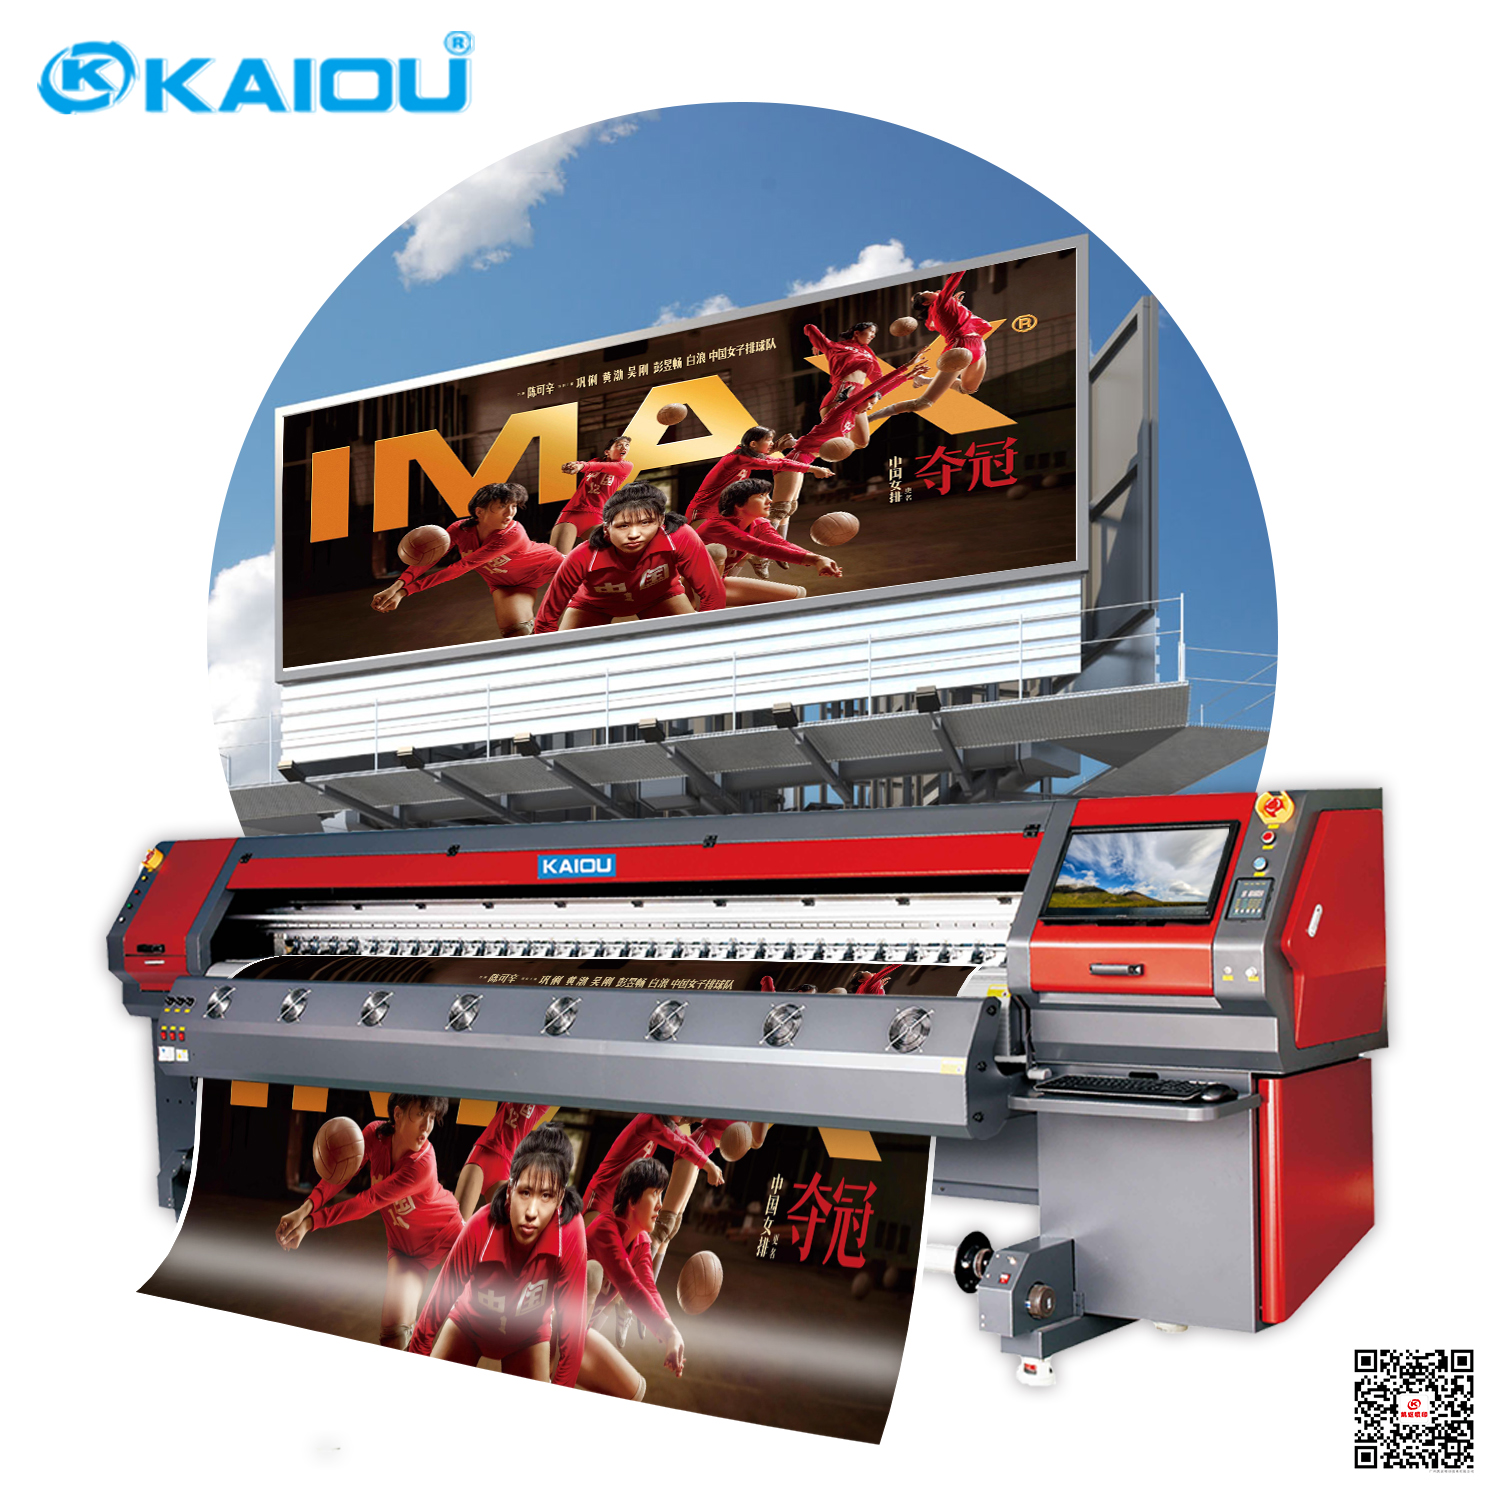 Impresora solvente KAIOU Ancho de impresión de 3,2 m